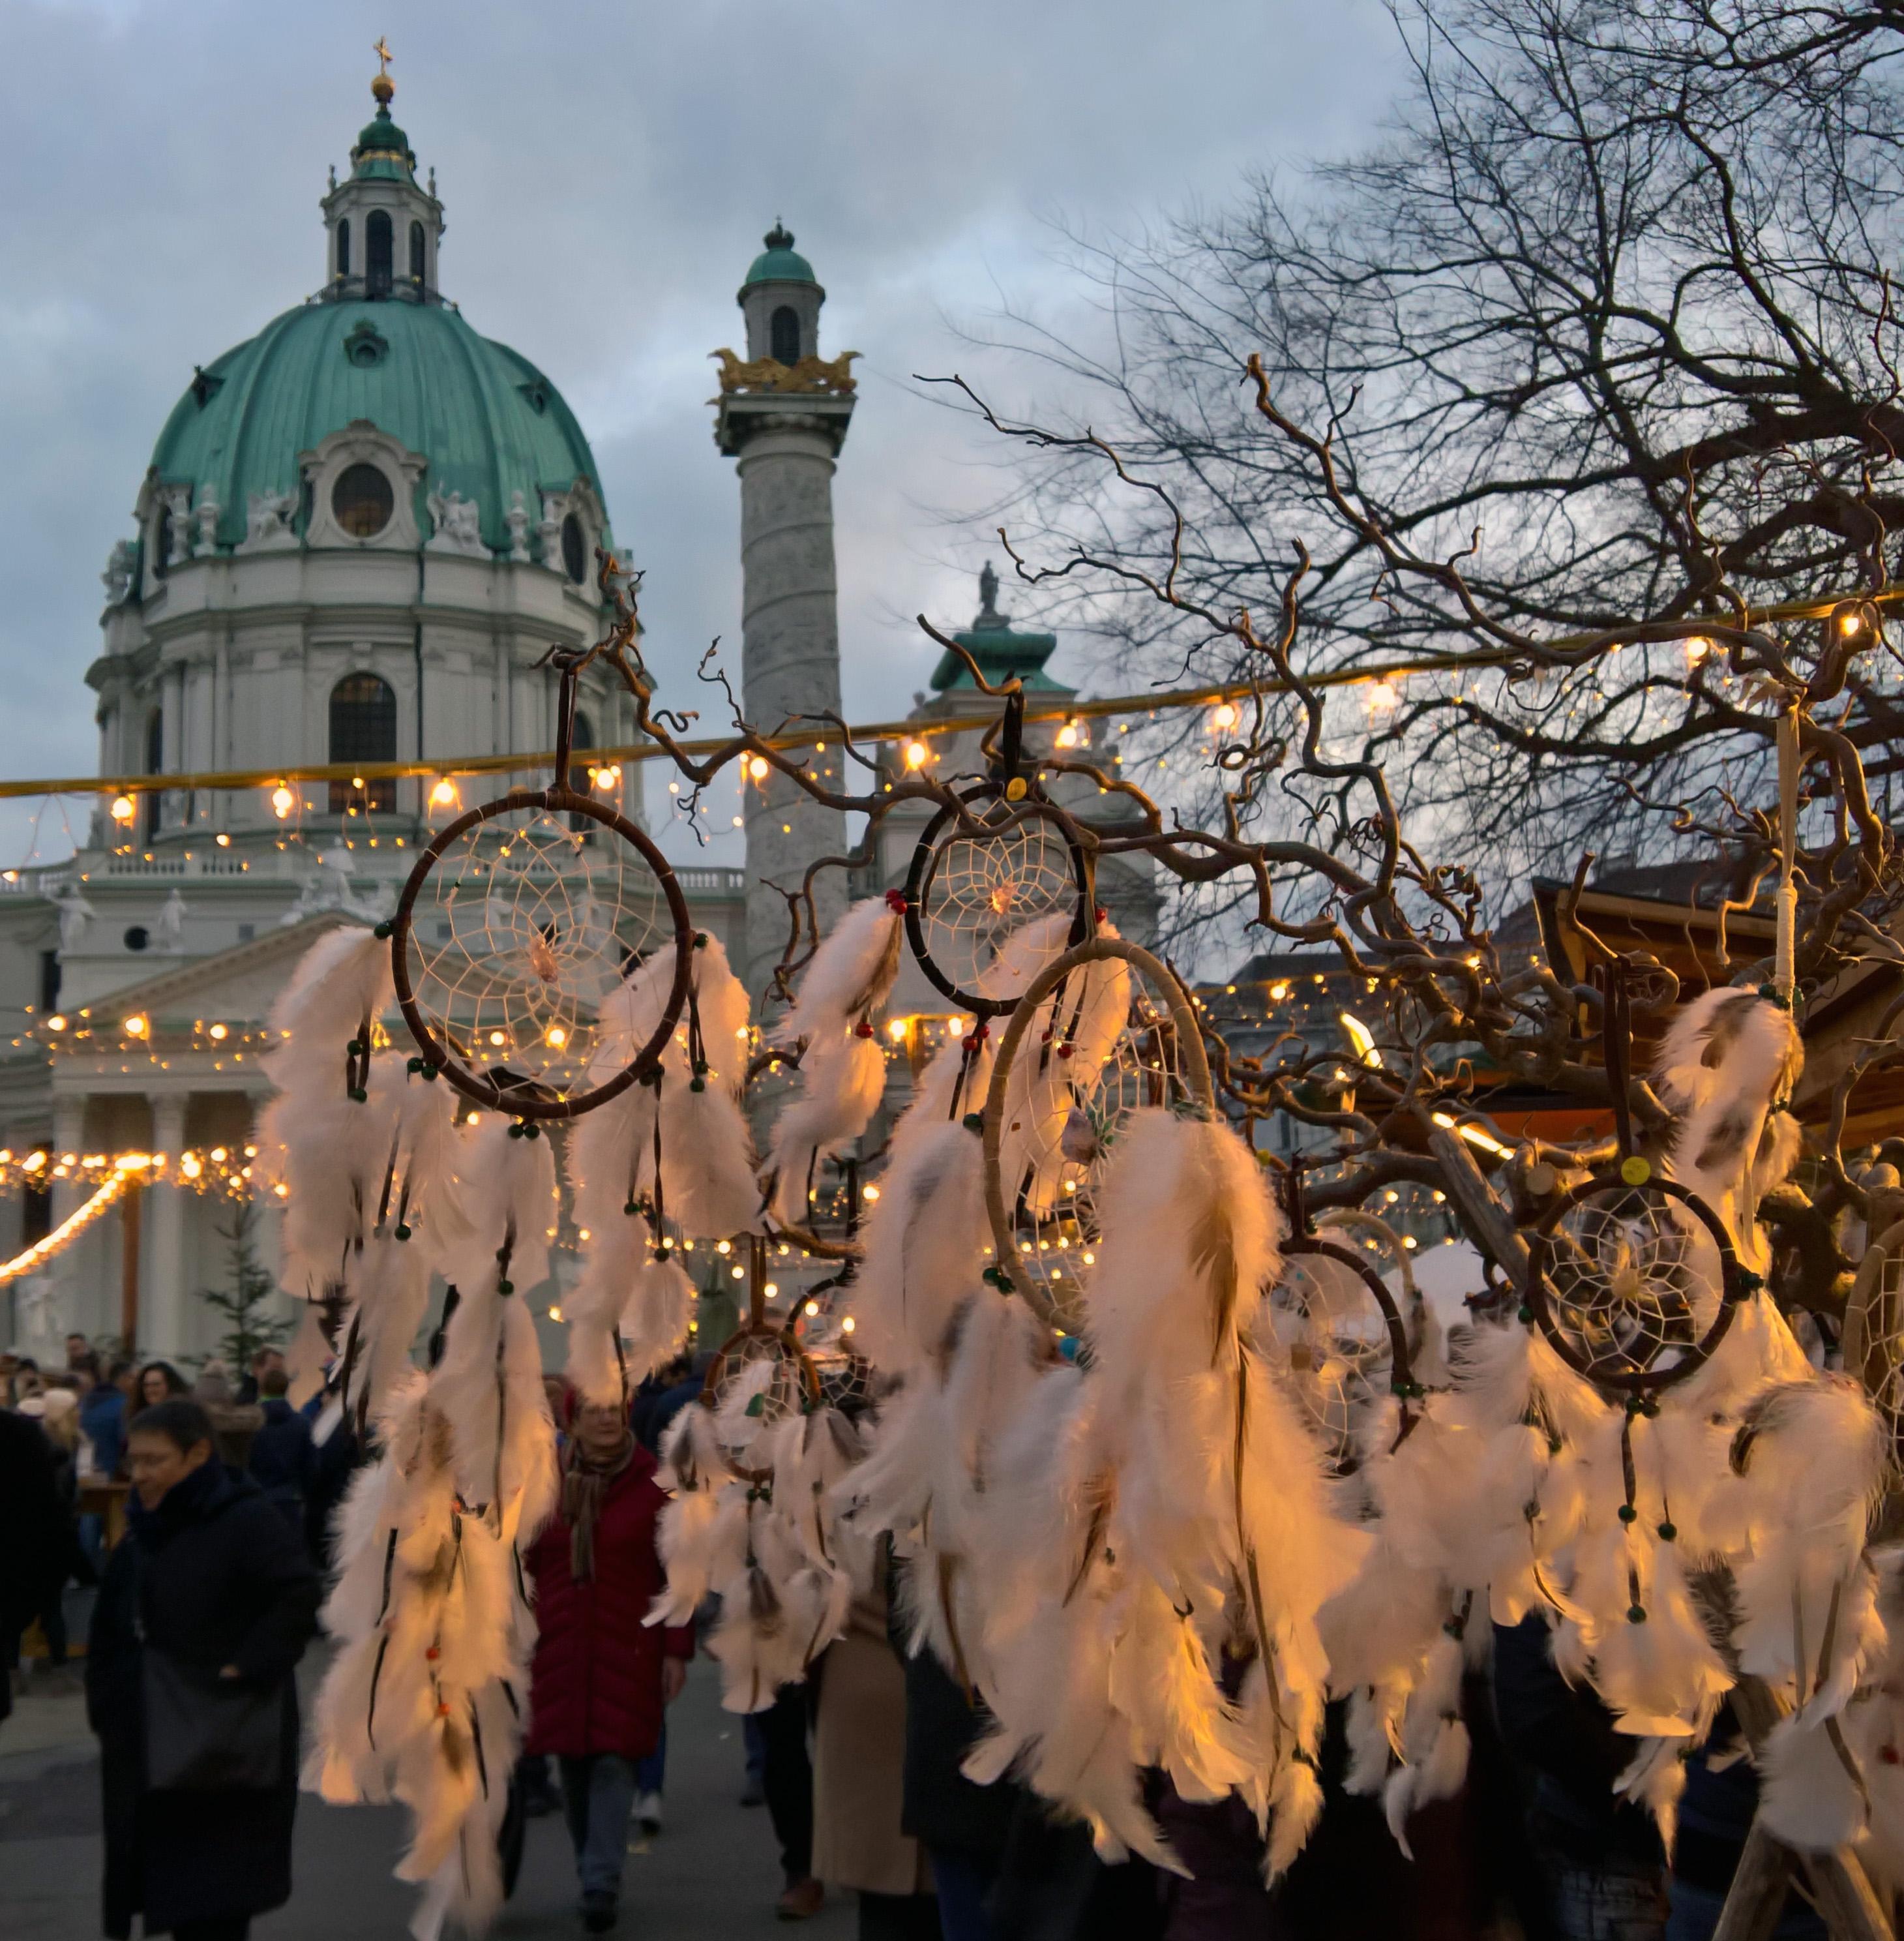 Weihnachtsmarkt am Karlsplatz in Wien #vondirinspiriert 